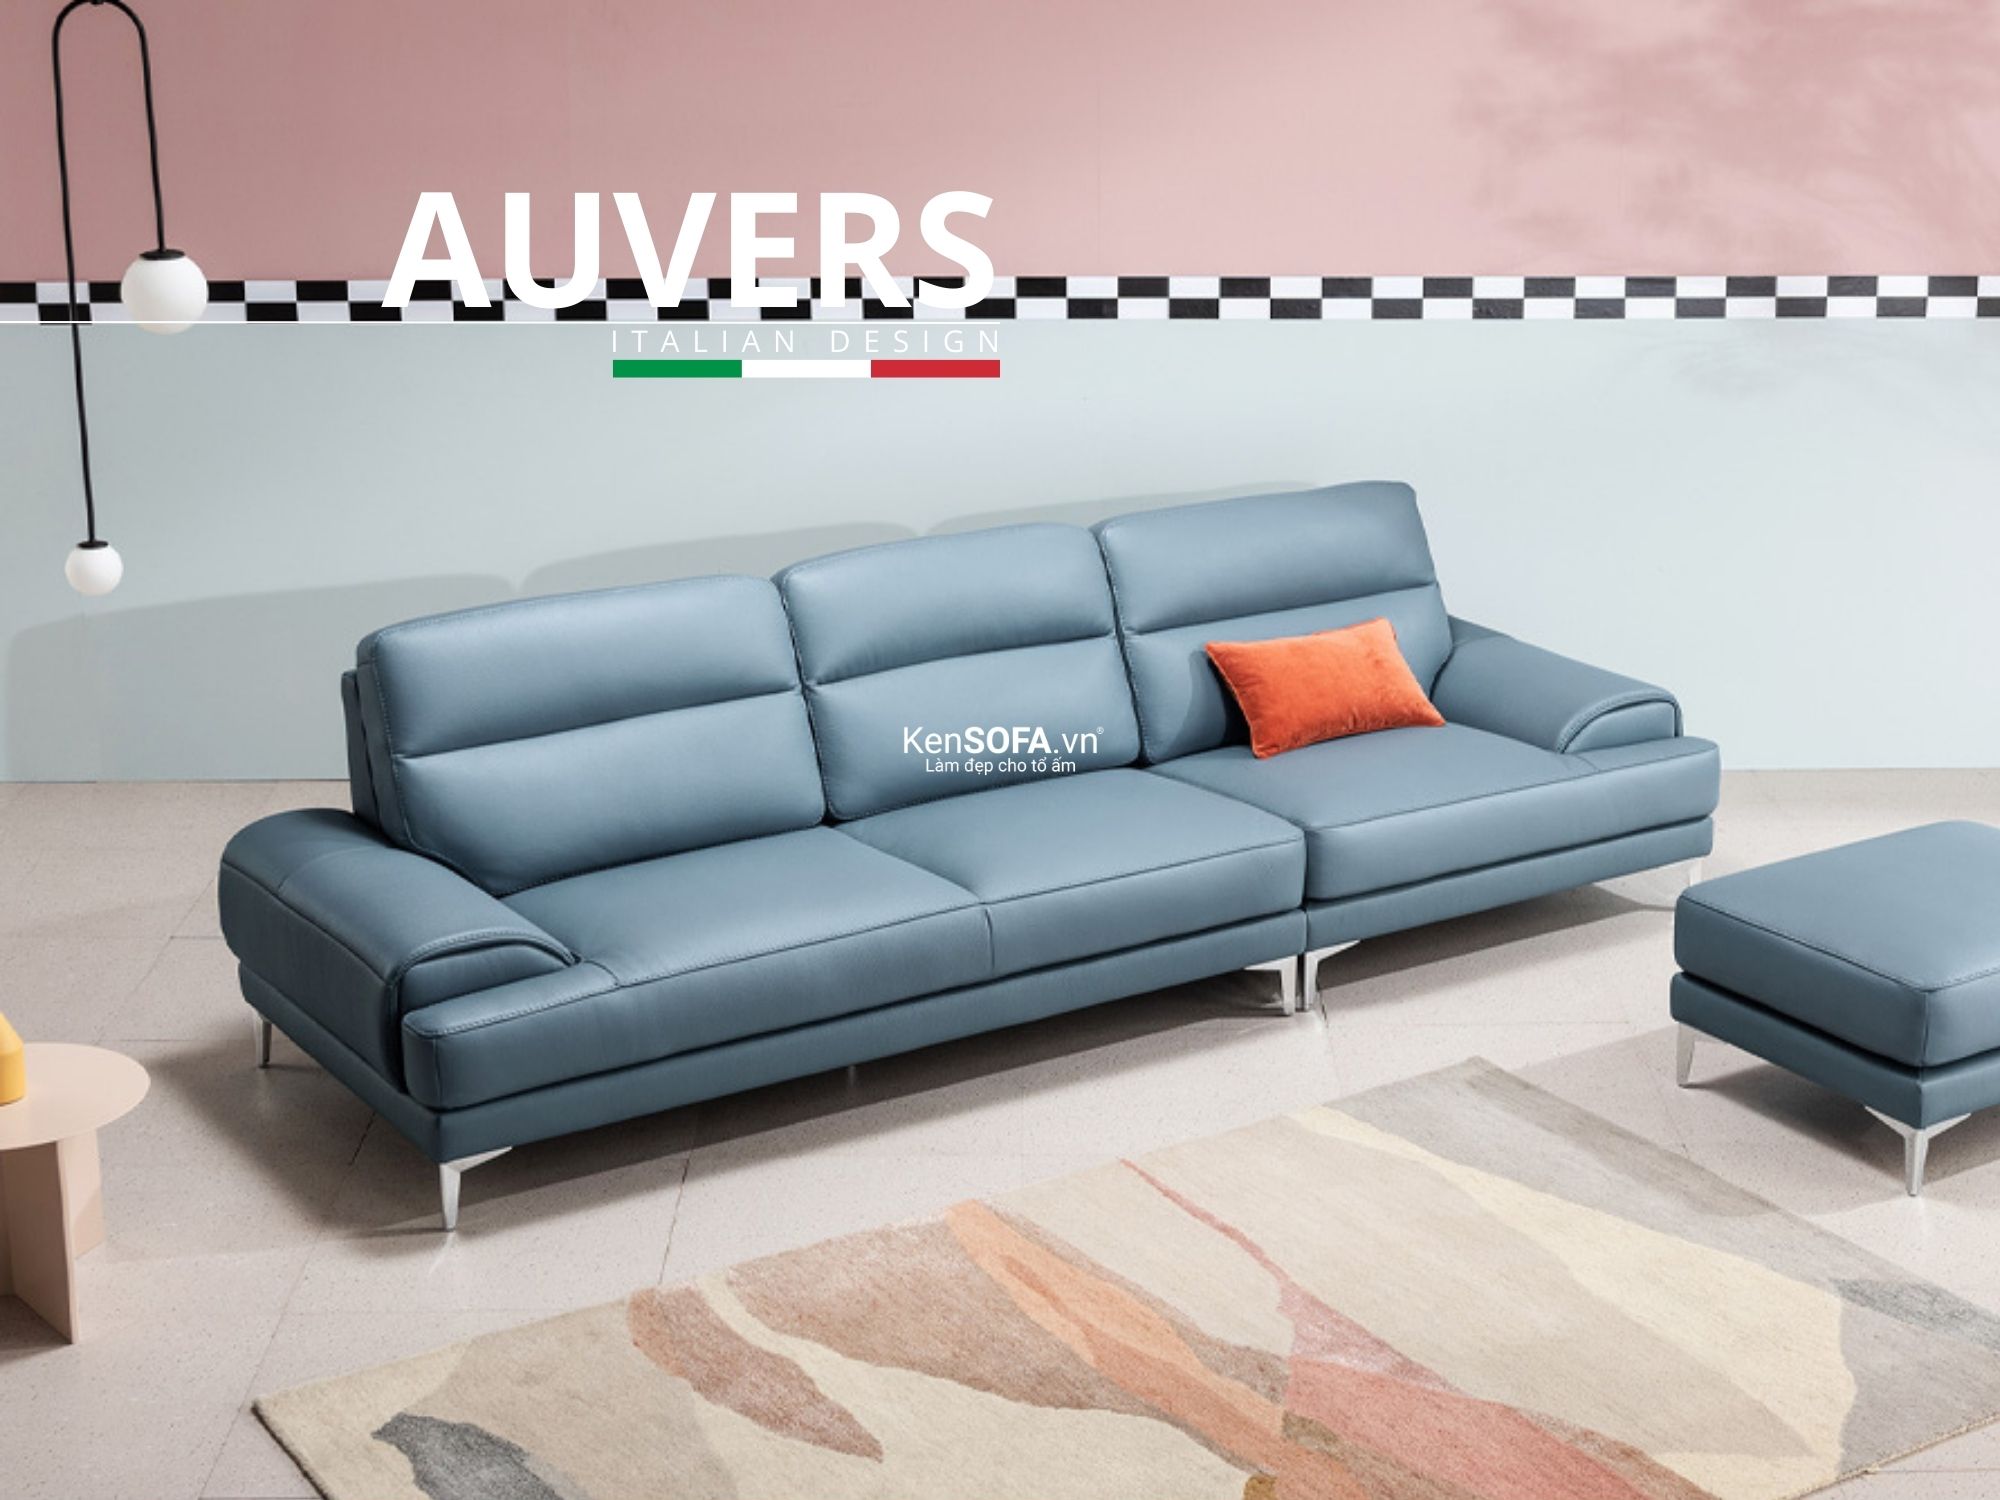 Sofa băng da cao cấp CC13 Auvers da Hàn Quốc nhập khẩu